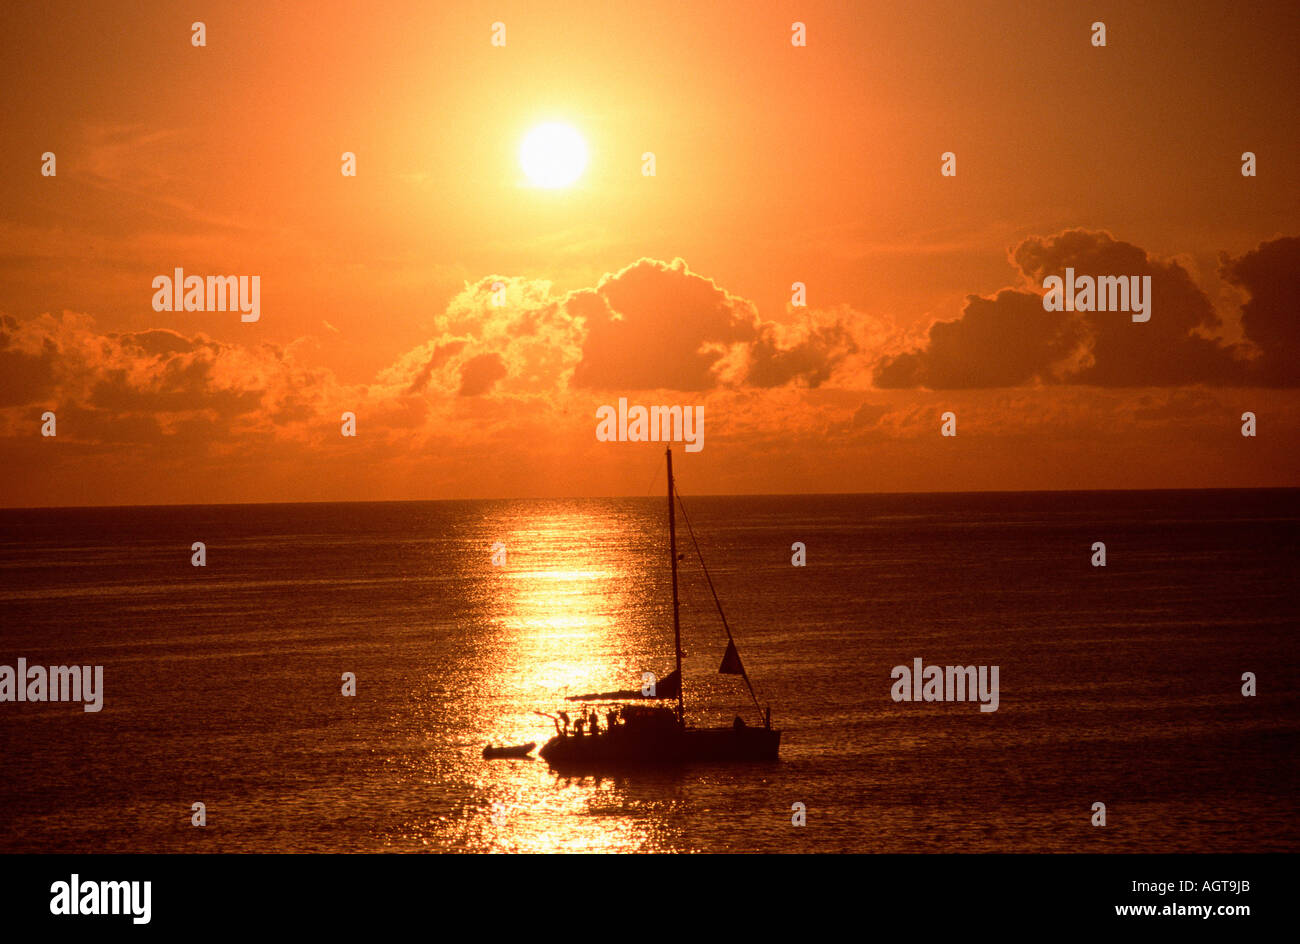 Sailing boat at sunrise Stock Photo